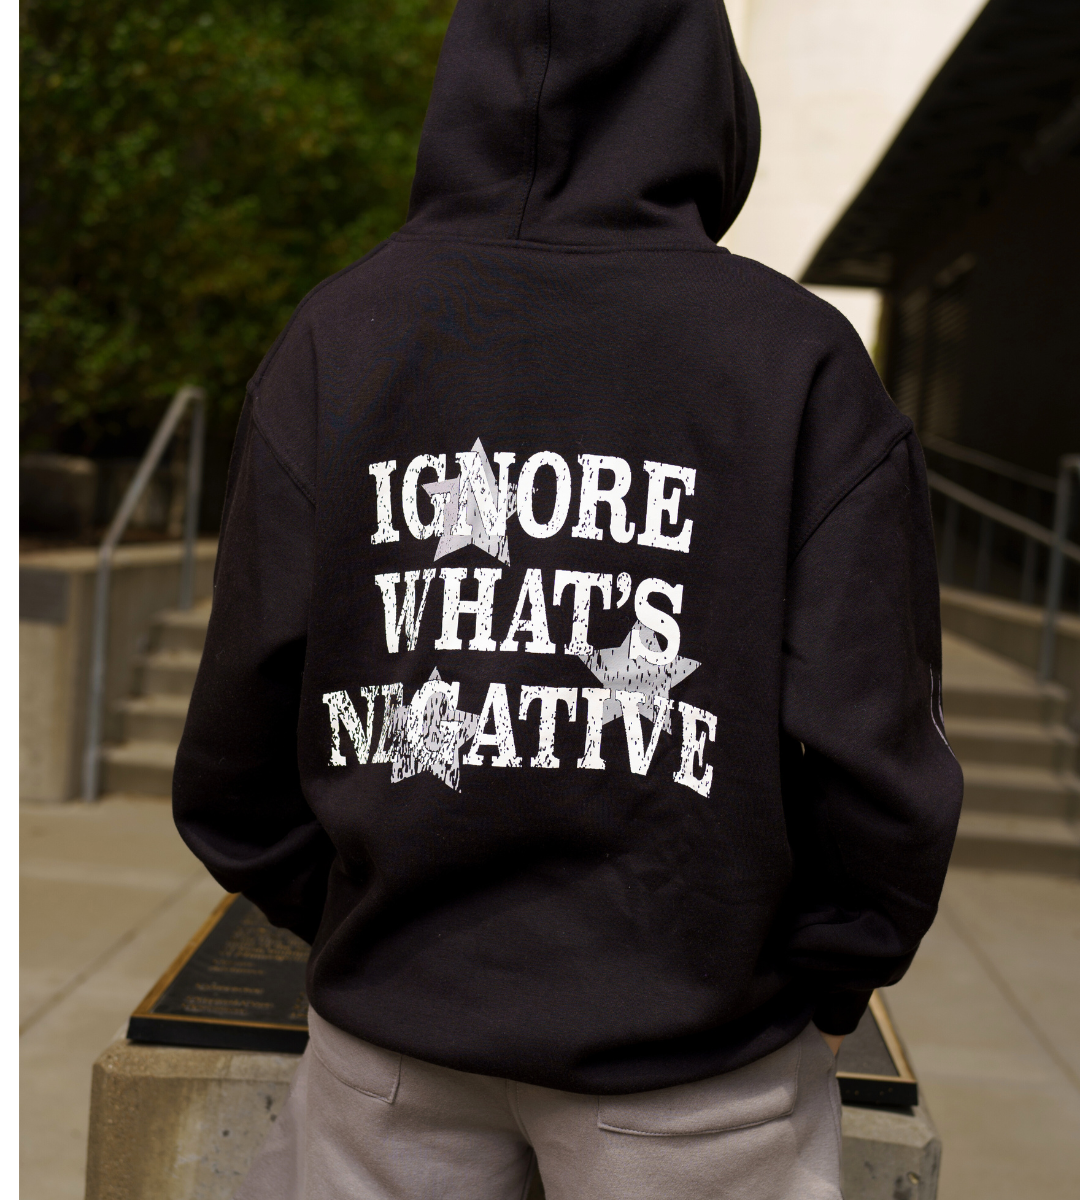 Ignore What's Negative Hoodie 10k [Black]